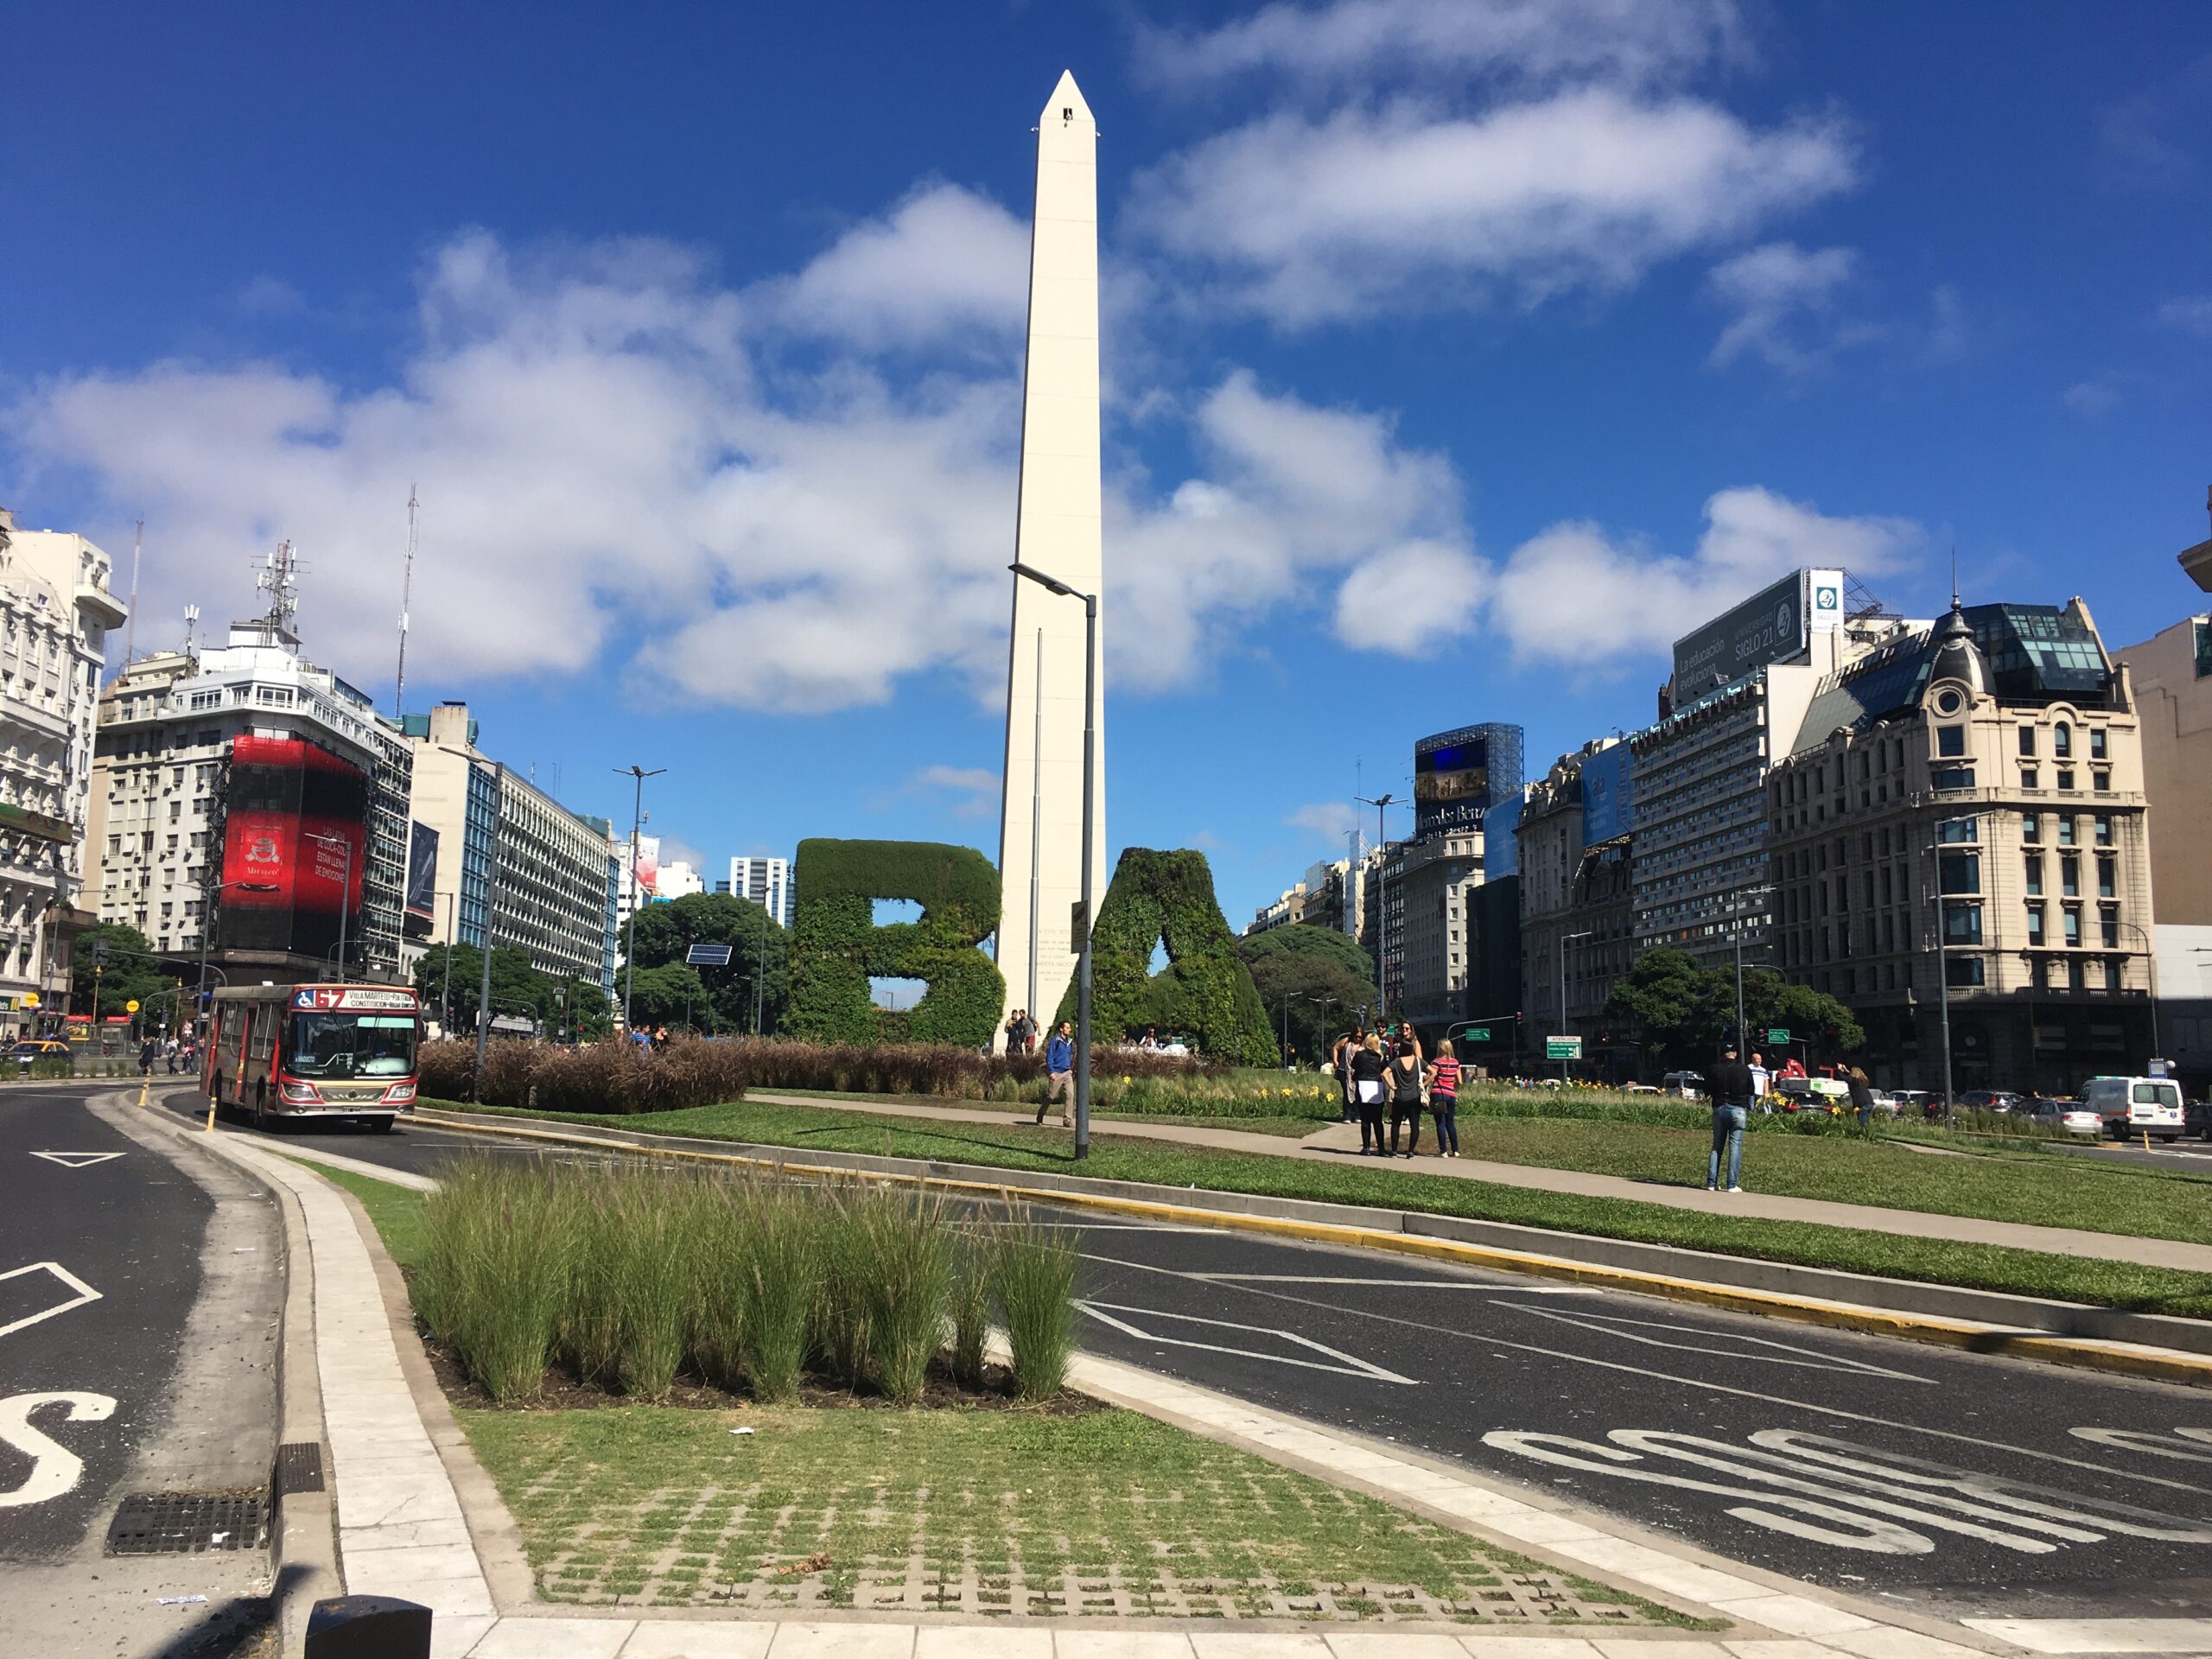 Gastronomía y Cultura: las propuestas para este fin de semana largo en la Ciudad de Buenos Aires